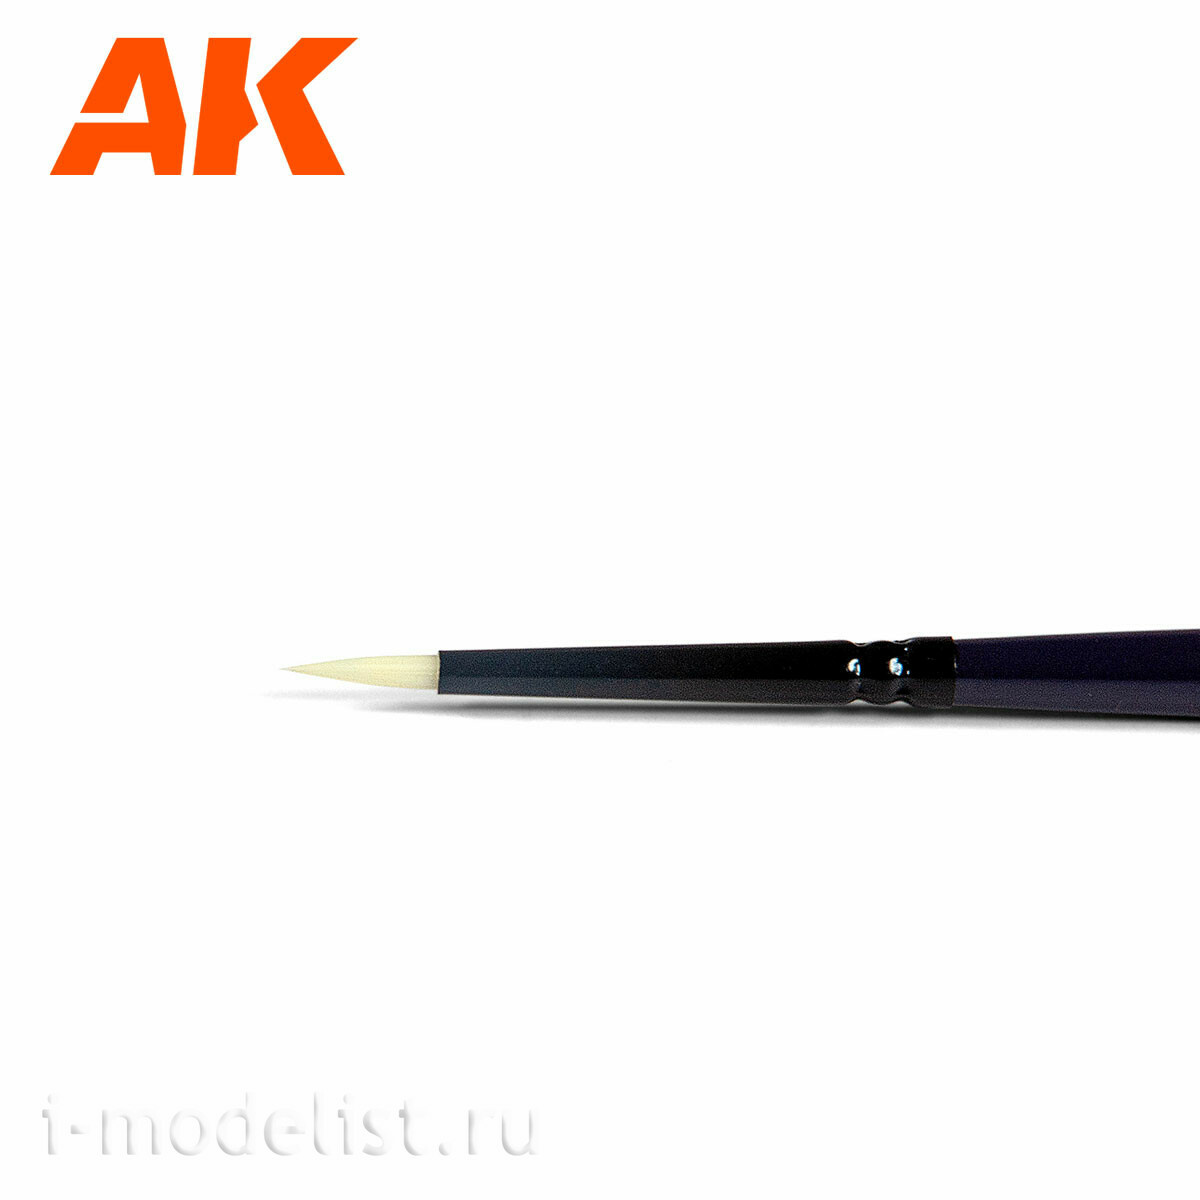 AK571 AK Interactive Brush Tabletop - 1